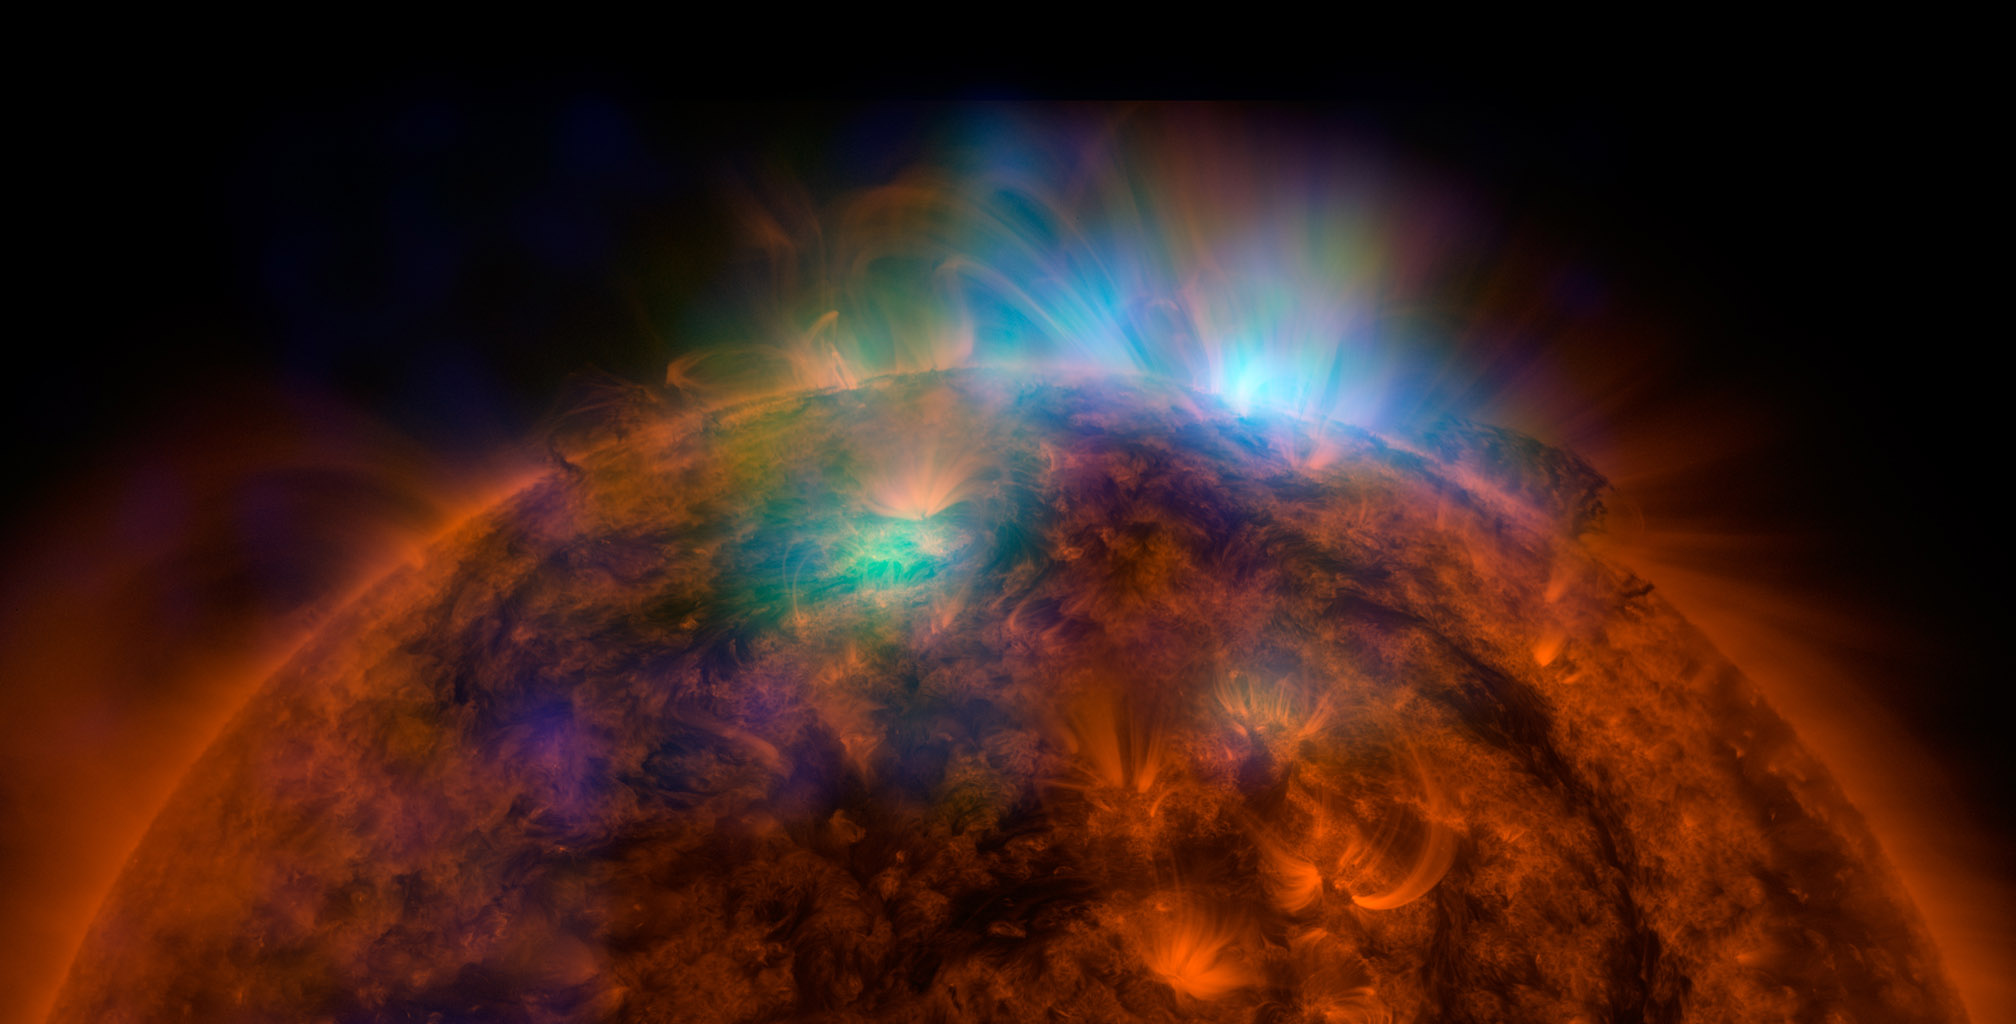 Notre Soleil serait plutôt fainéant par rapport aux autres étoiles de son acabit